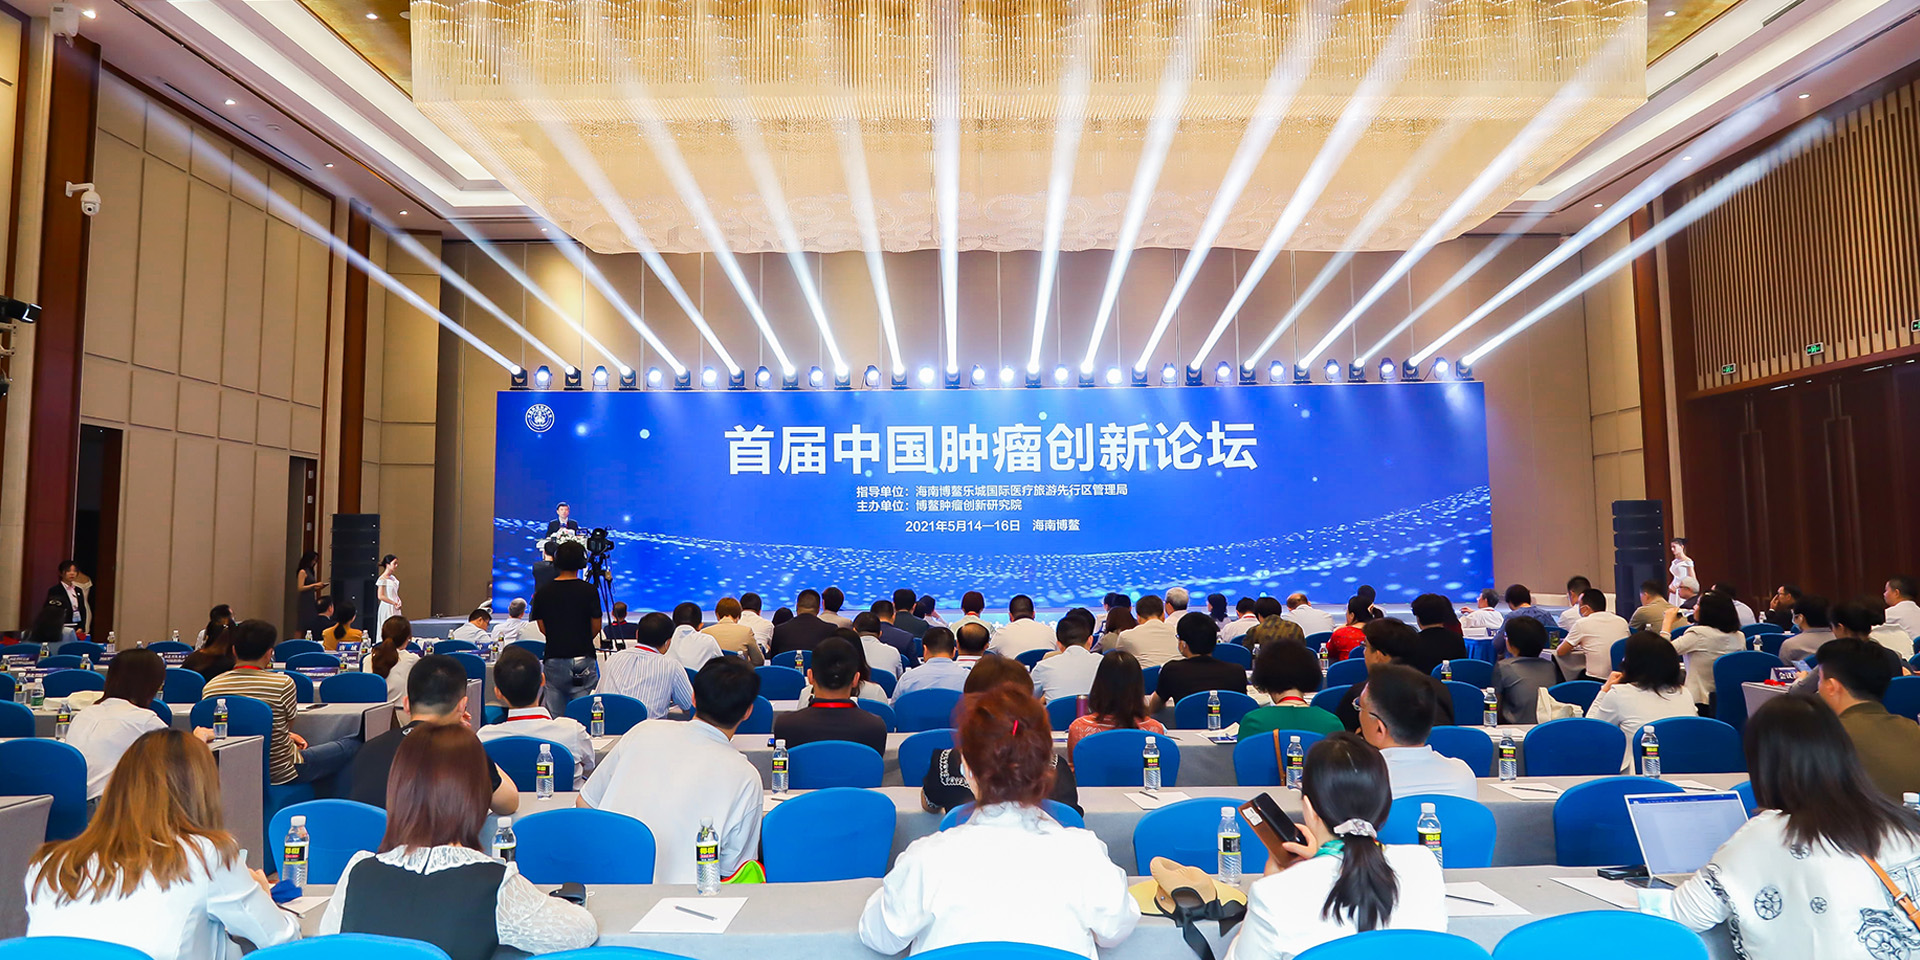 首屆中國腫瘤創新論壇在博鰲召開<br>1部共識2個聯盟3個項目閃亮登場